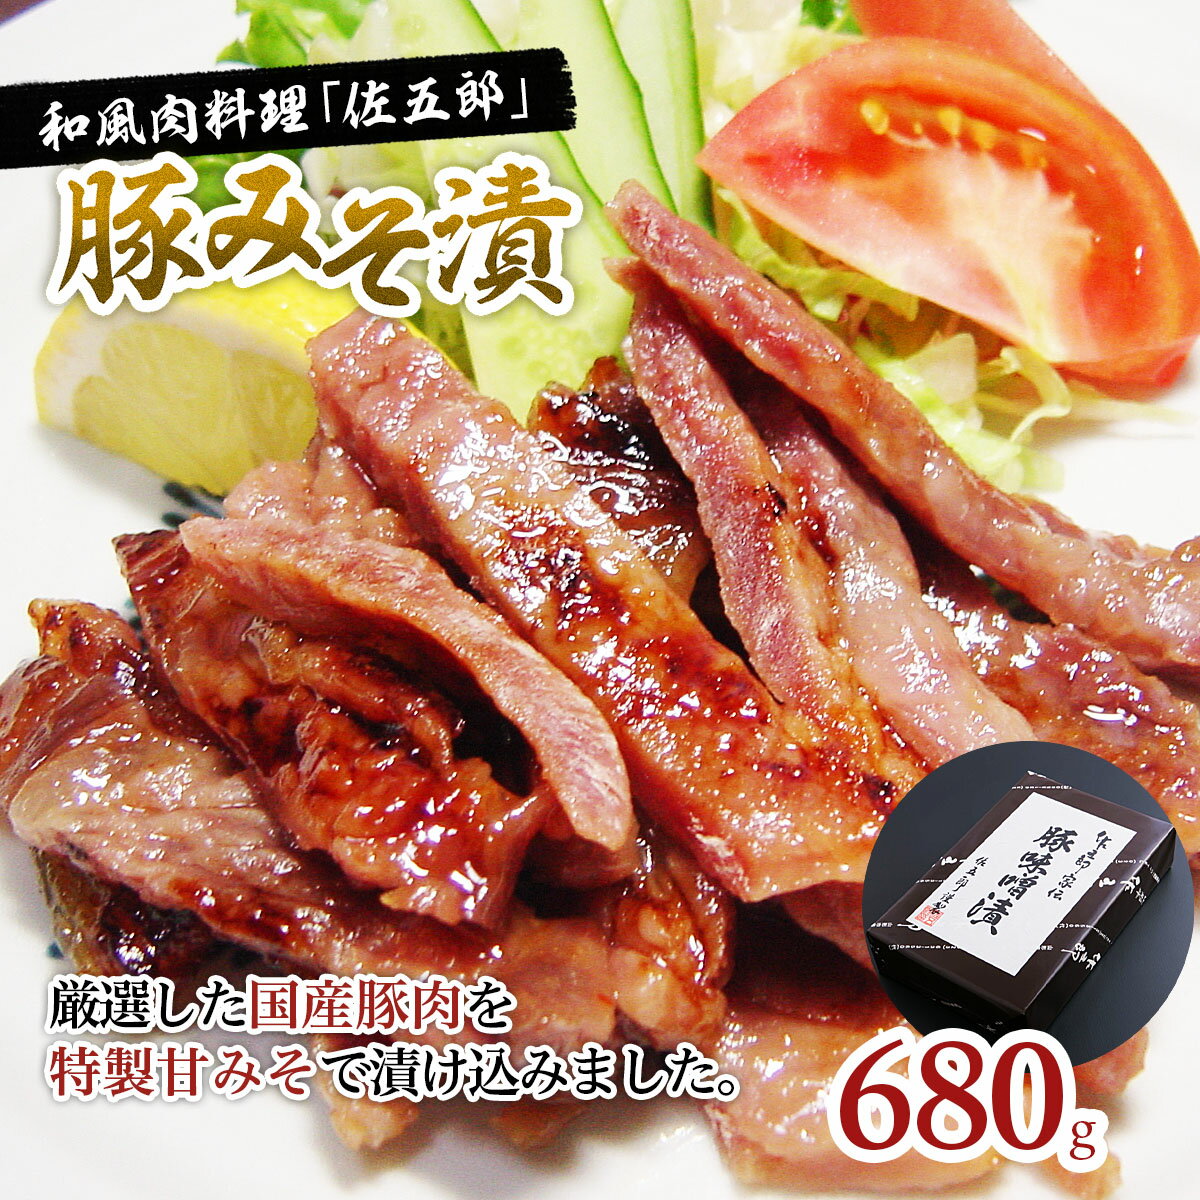 【ふるさと納税】和風肉料理 「佐五郎」 豚みそ漬680g fz19-279